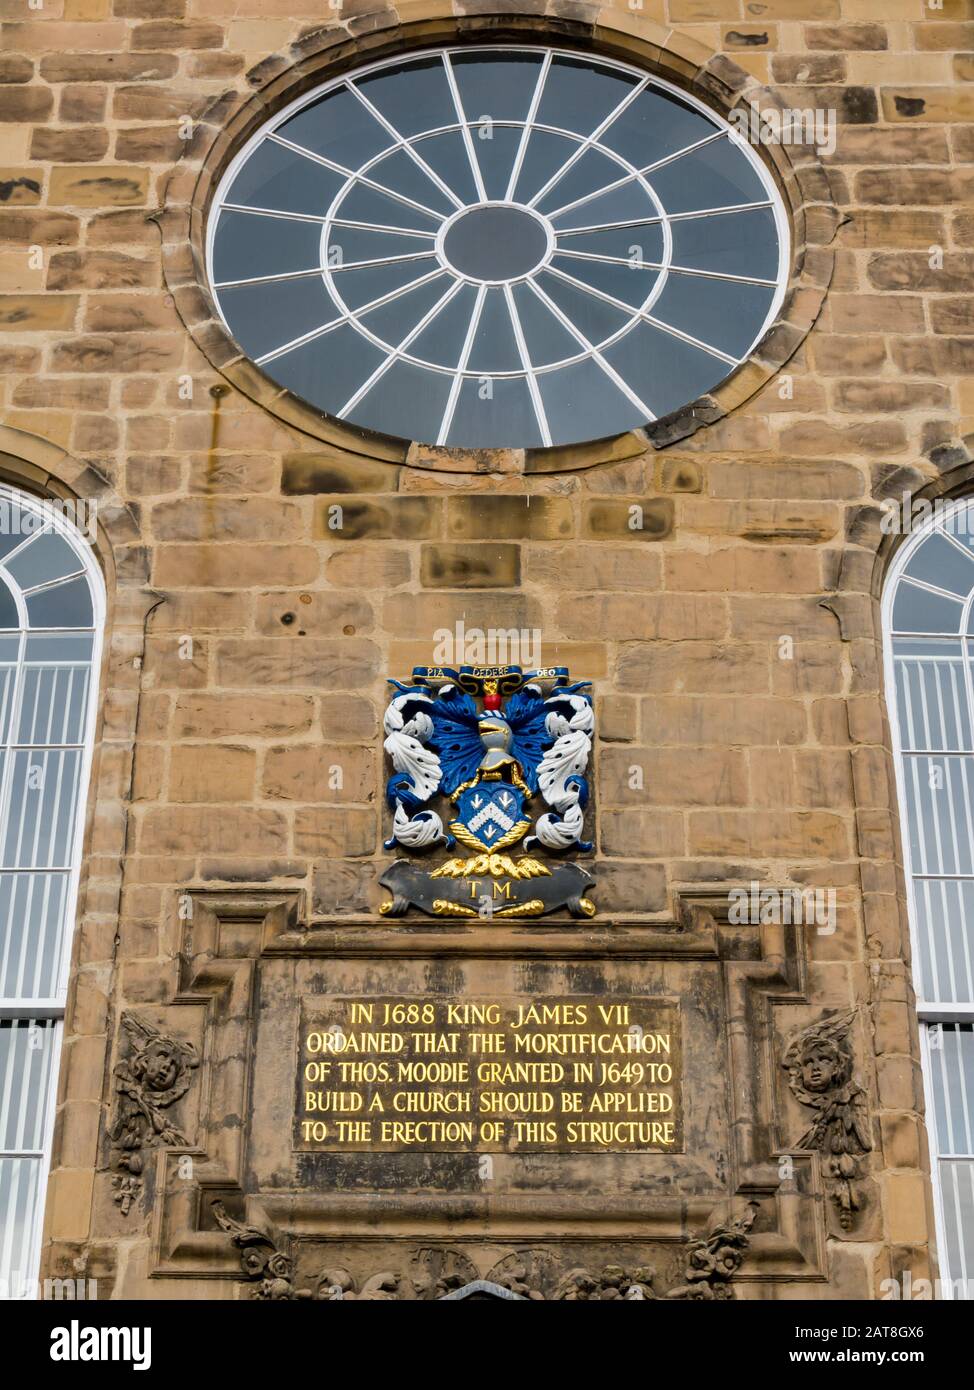 Près de l'avant de Canongate Kirk repeint ou de l'église avec l'or James VII inscription, Royal Mile, Edinburgh, Ecosse, Royaume-Uni Banque D'Images